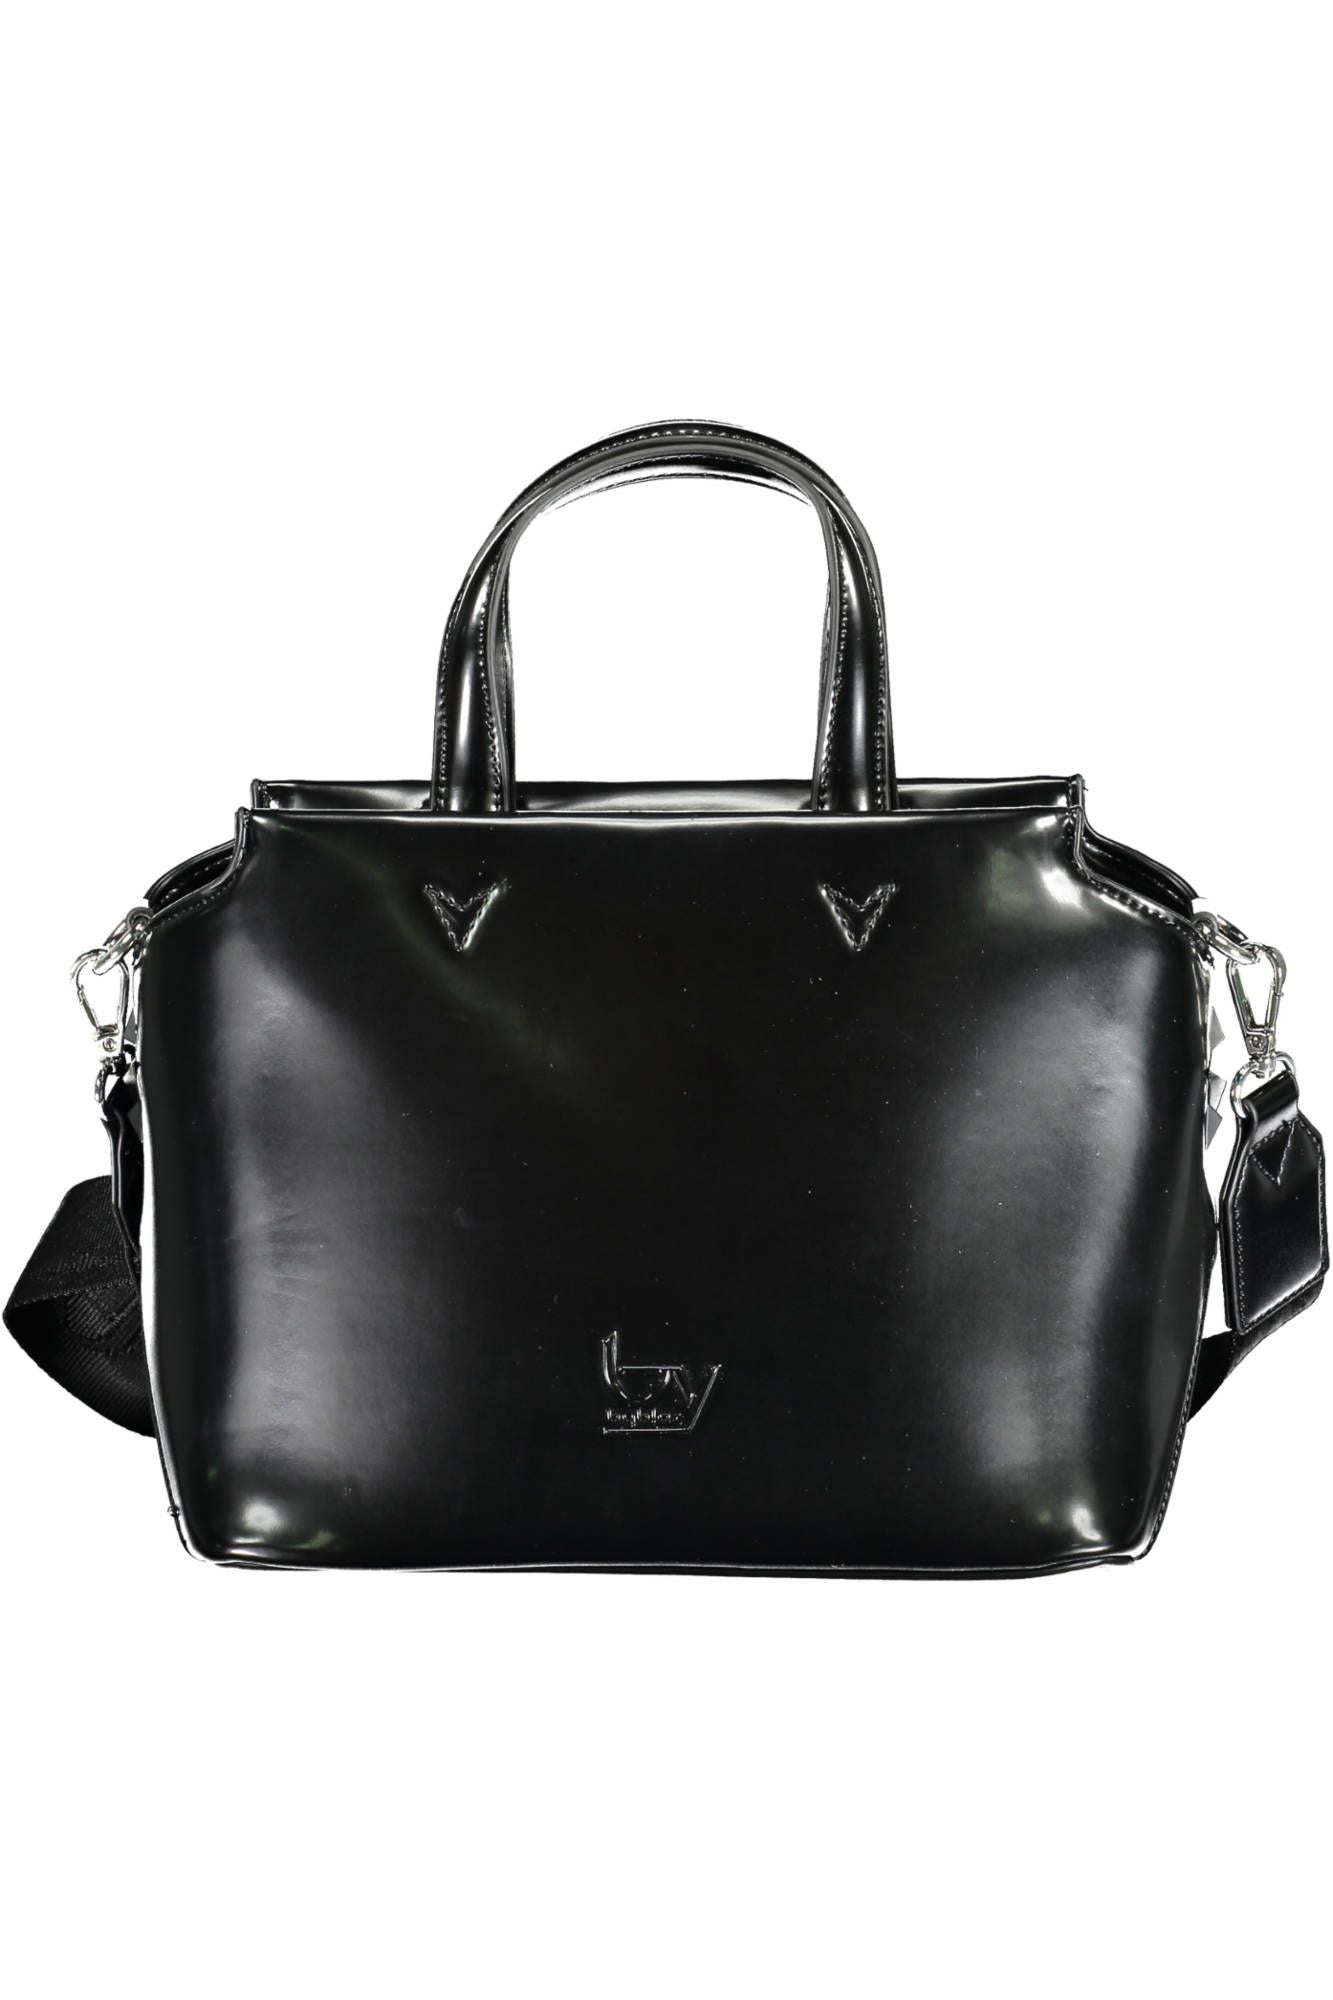 BYBLOS Elegant Black Two-Handle Bag with Contrasting Details